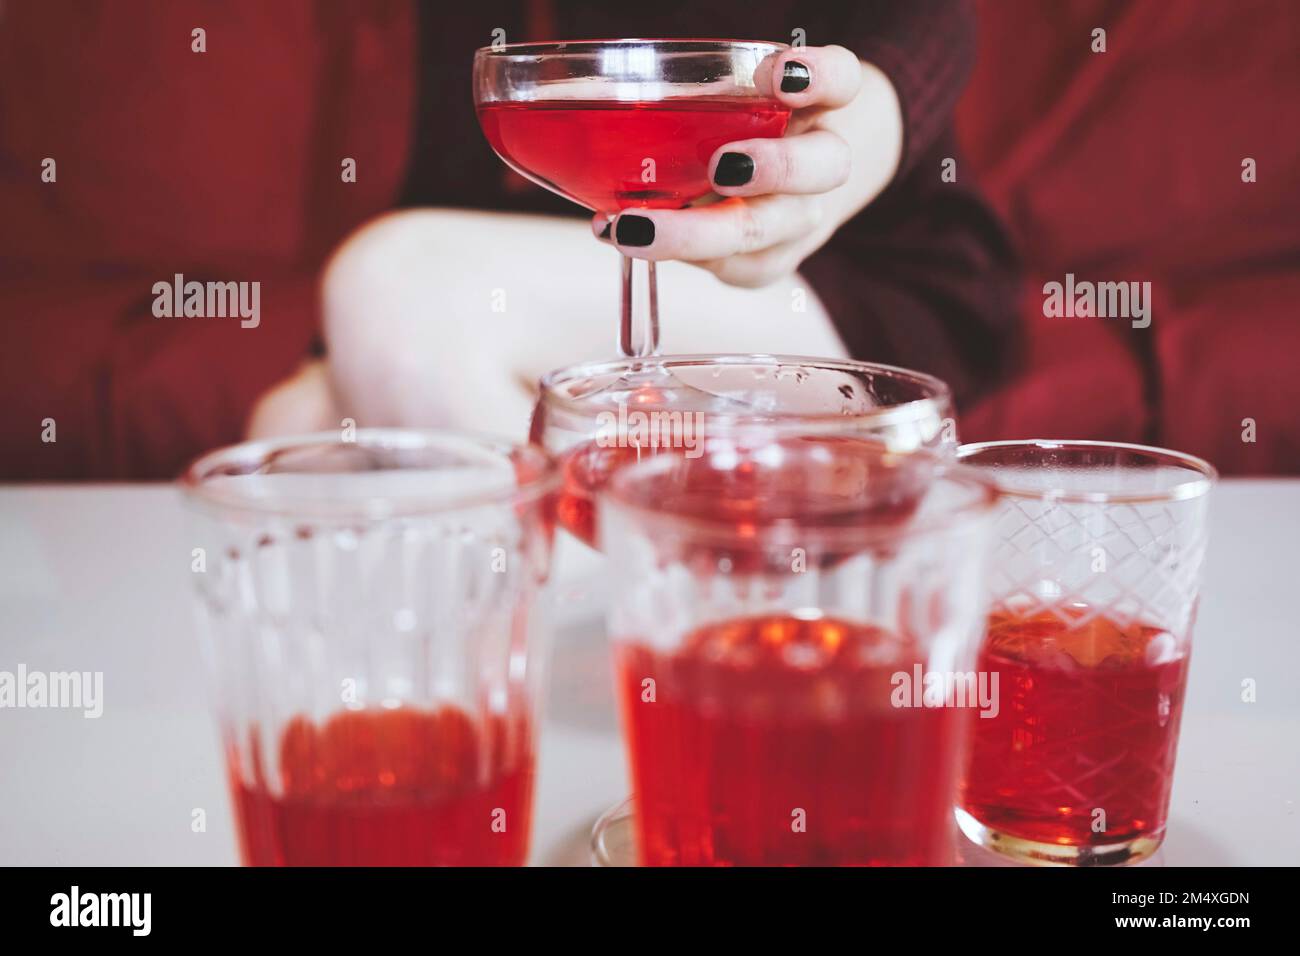 Main de femme tenant un coupé à champagne avec une boisson alcoolisée rouge Banque D'Images